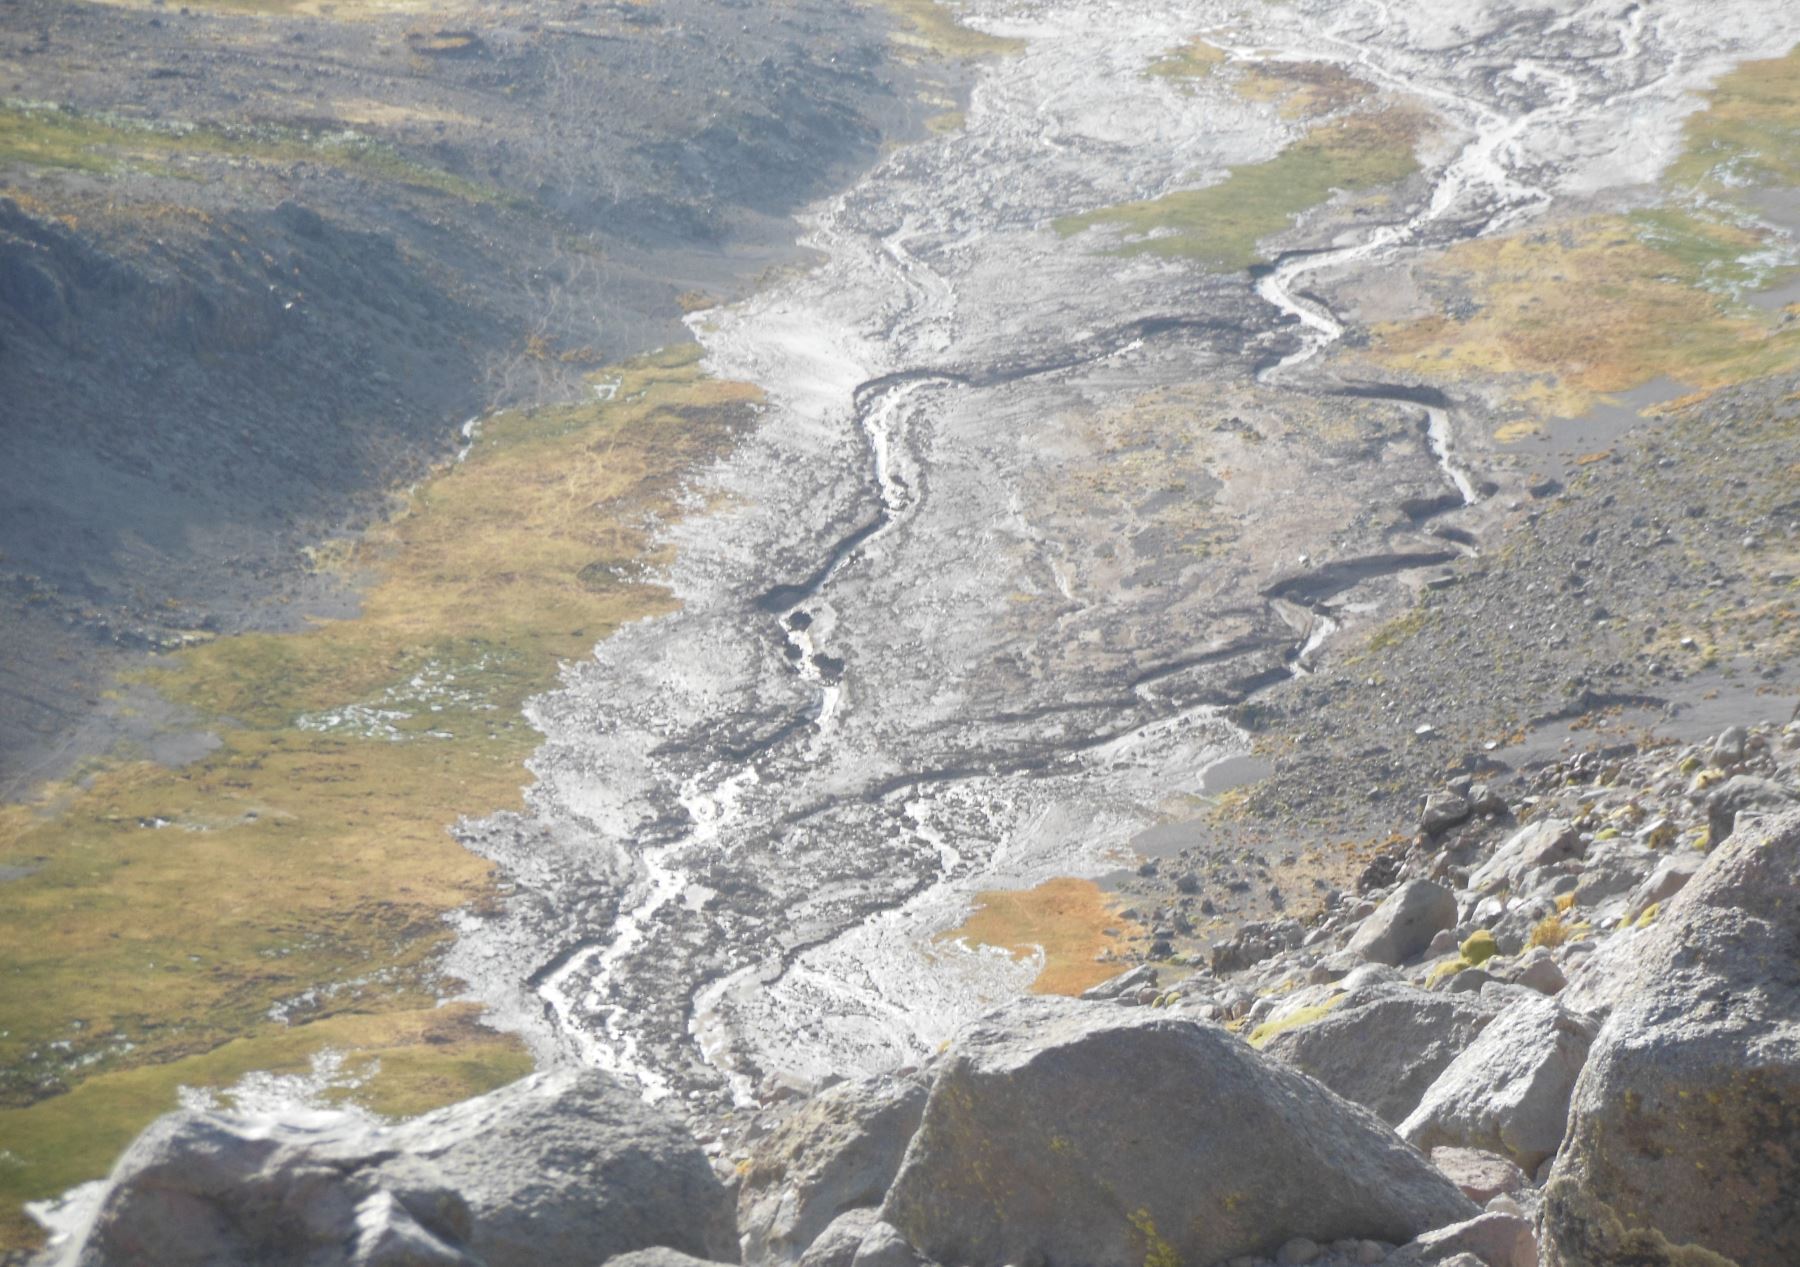 Deshielos del nevado Coropuna causan huaico que afectó canales de riego en zonas altas de Arequipa. ANDINA/Difusión